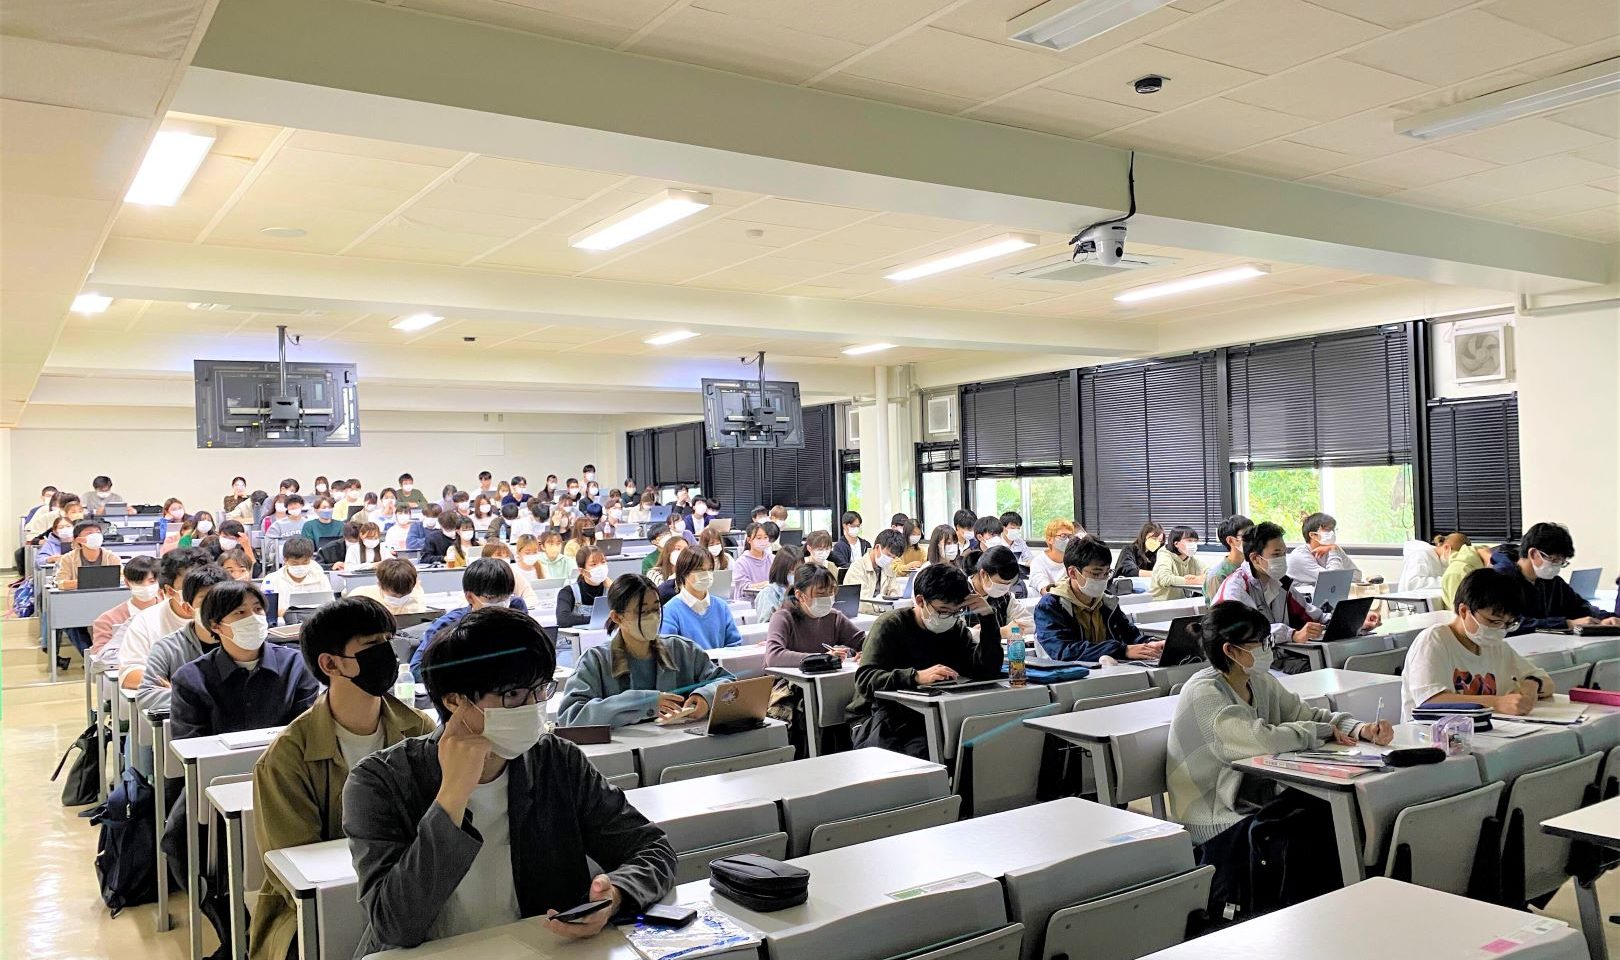 中村の講演に耳を傾ける埼玉大学の学生たち